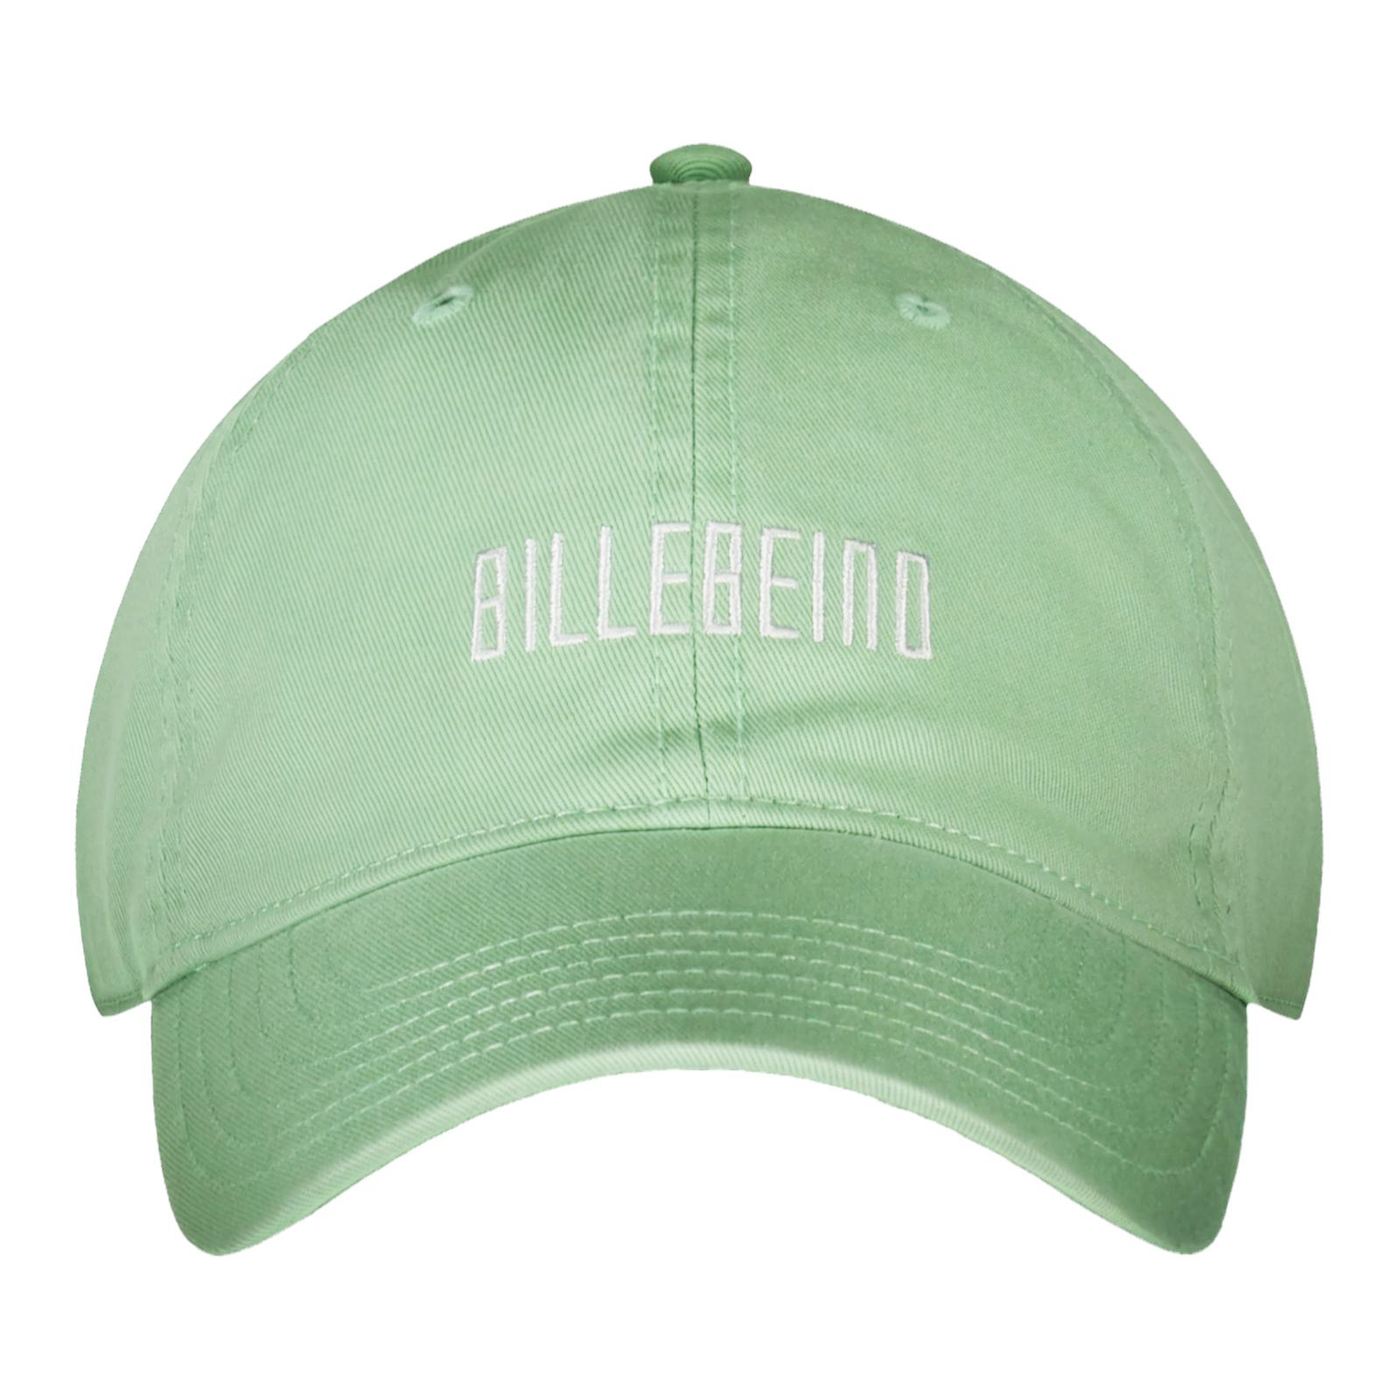 BILLEBEINO DAD CAP Green Billebeino